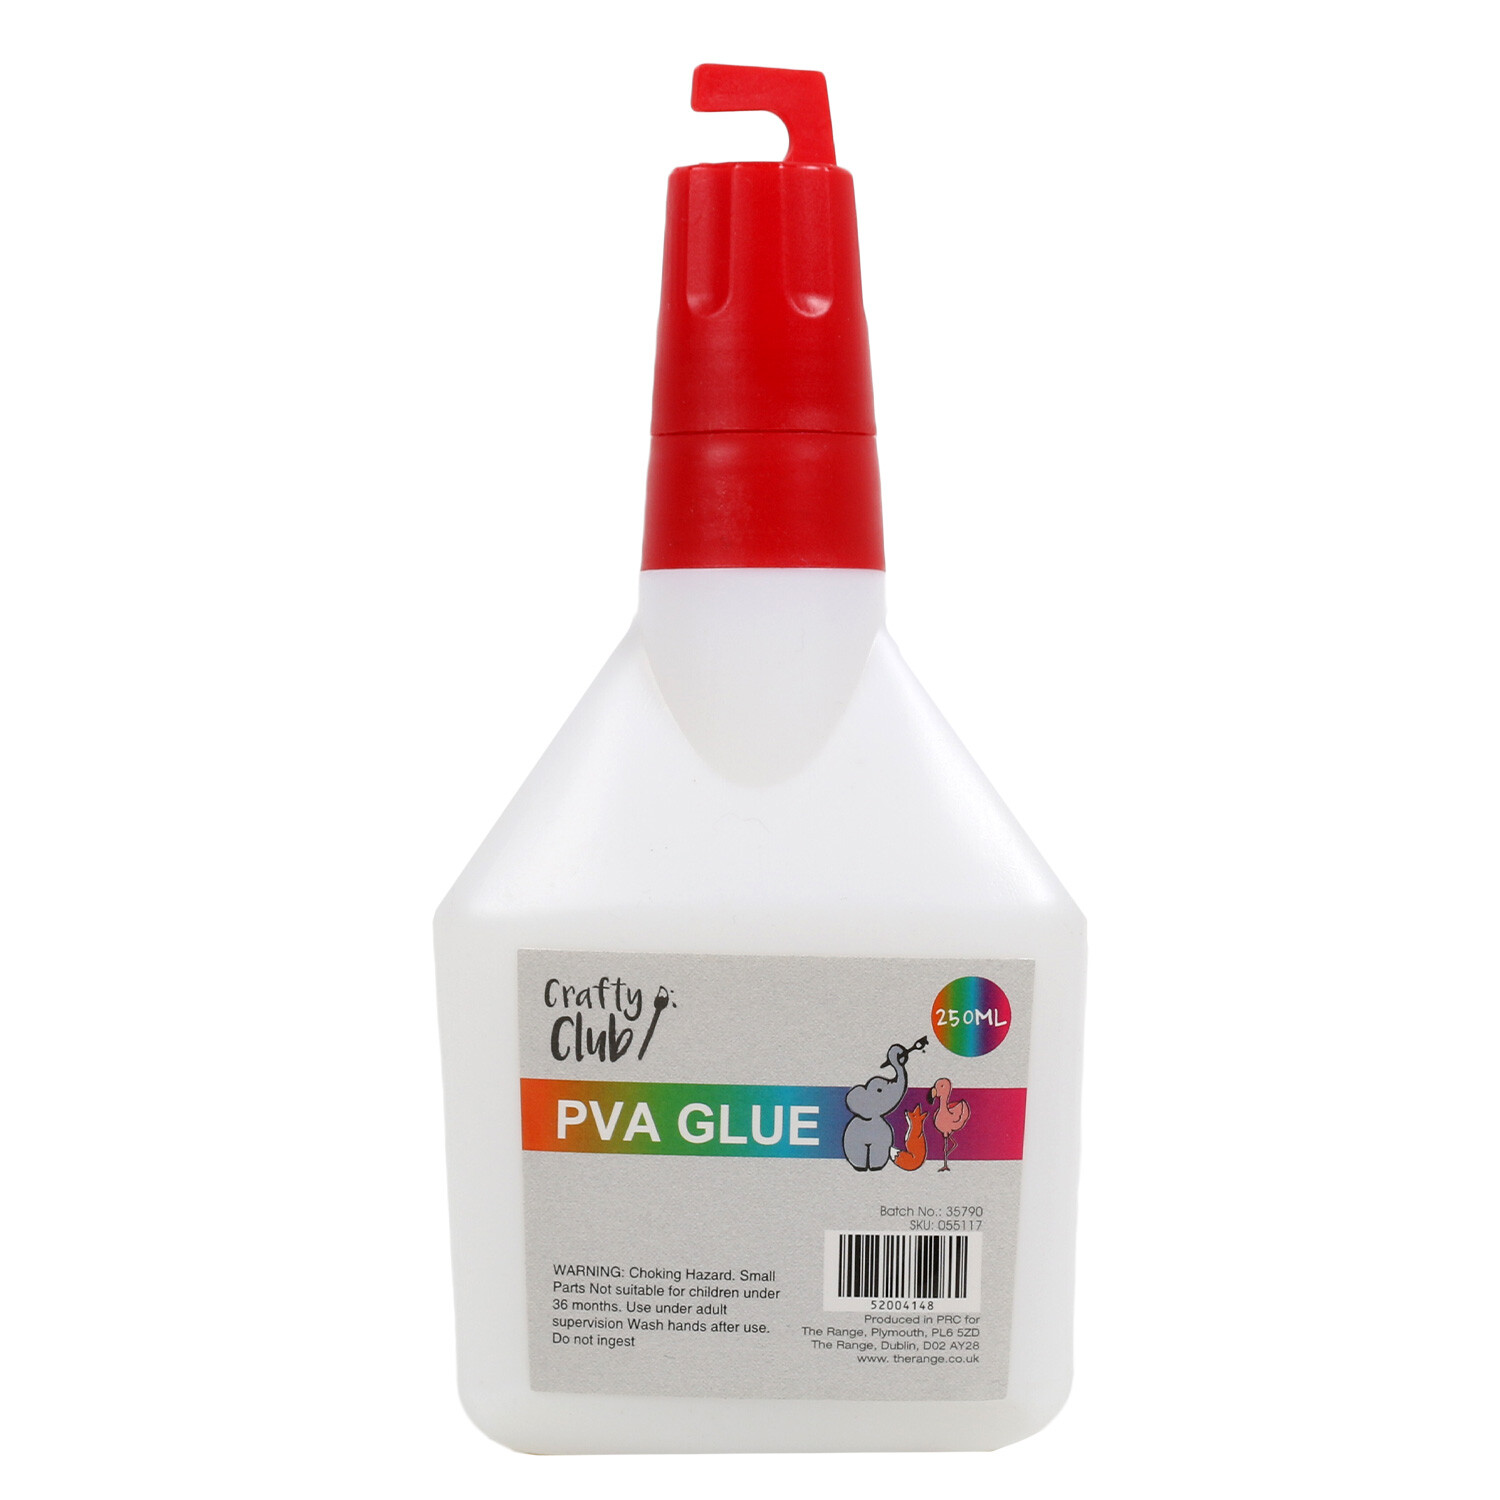 Crafty Club PVA Glue Image